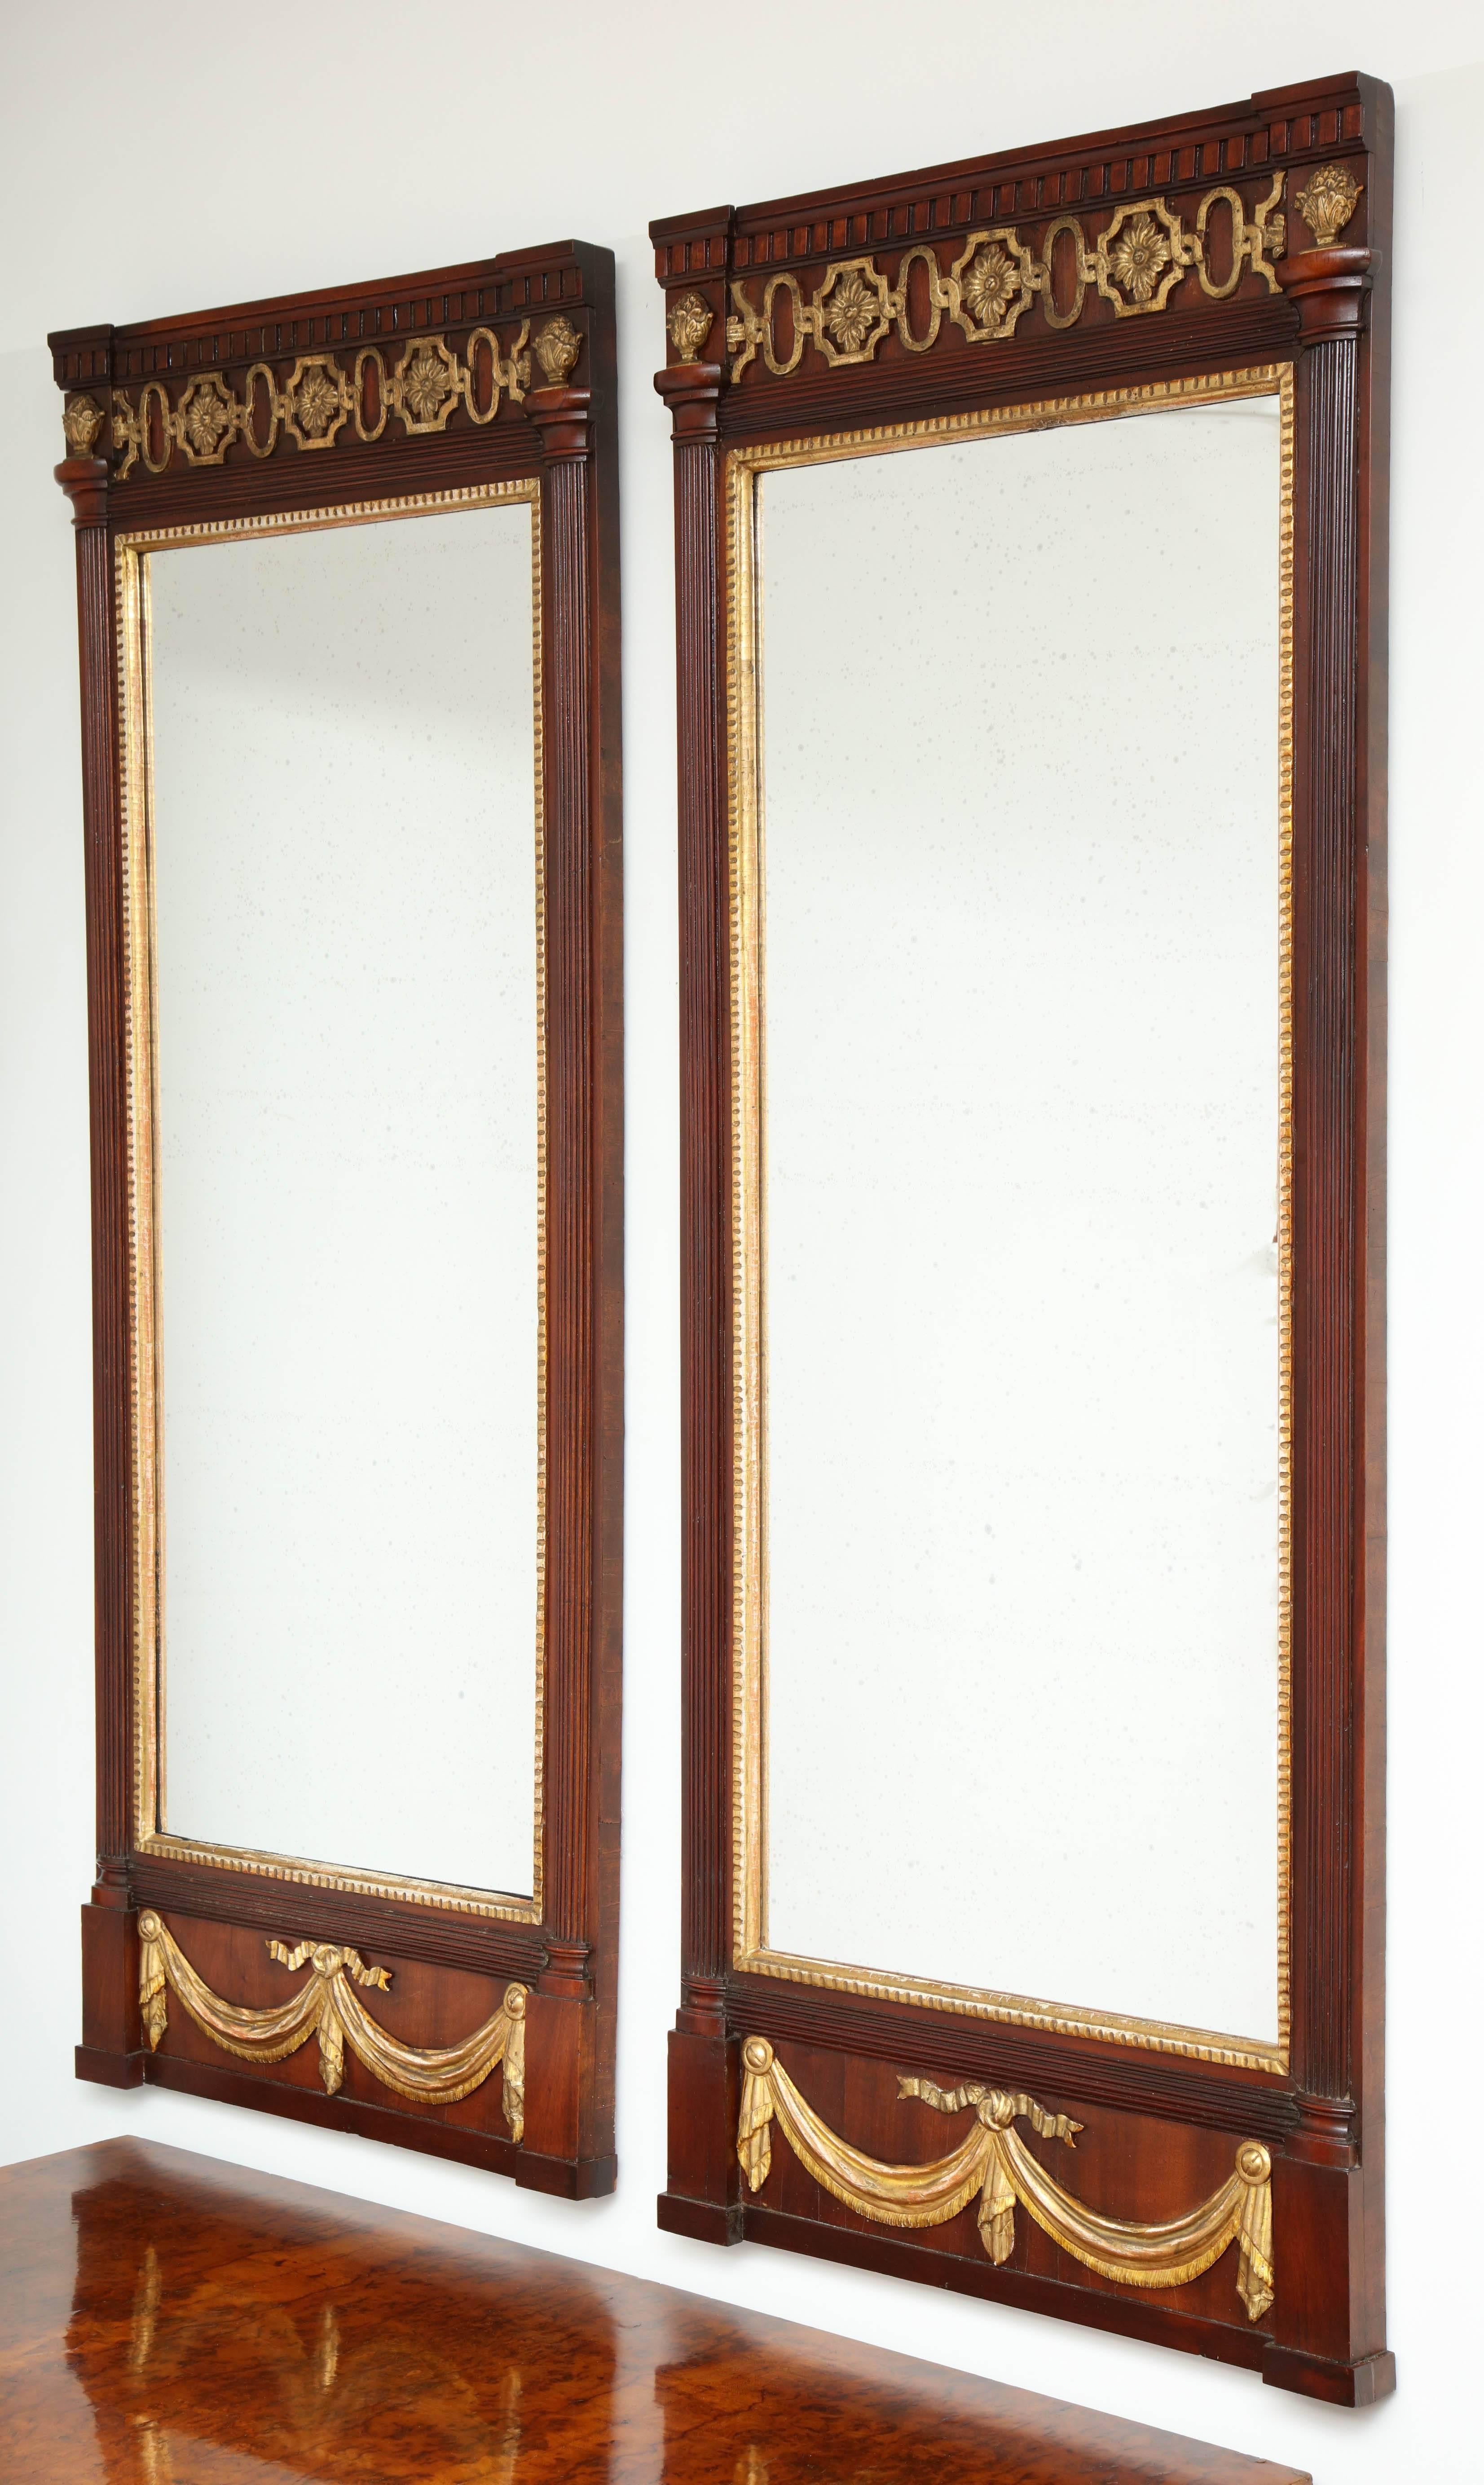 Paire de miroirs danois Louis XVI en acajou et dorés à la feuille, vers les années 1790, chacun avec une frise de denticules, un pilastre en demi-cercle et une guirlande de draperies dorées. Les deux rétroviseurs ont un verre de restauration